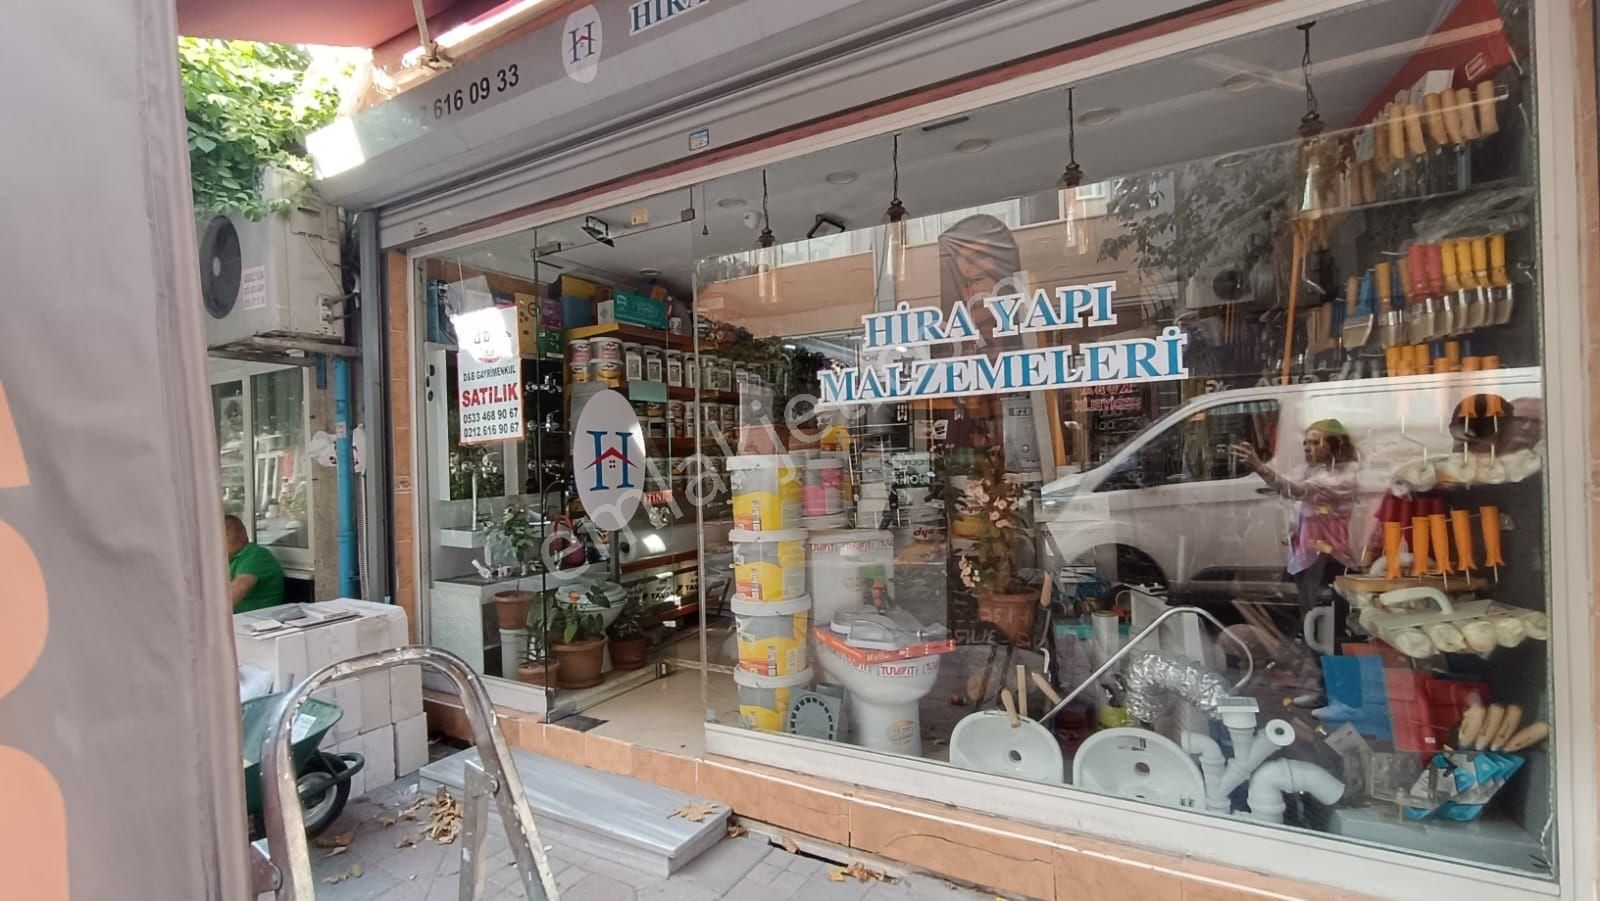 Eyüpsultan Rami Yeni Satılık Dükkan & Mağaza RAMİ Yeni mah çarşıda depolu satılık dükkan